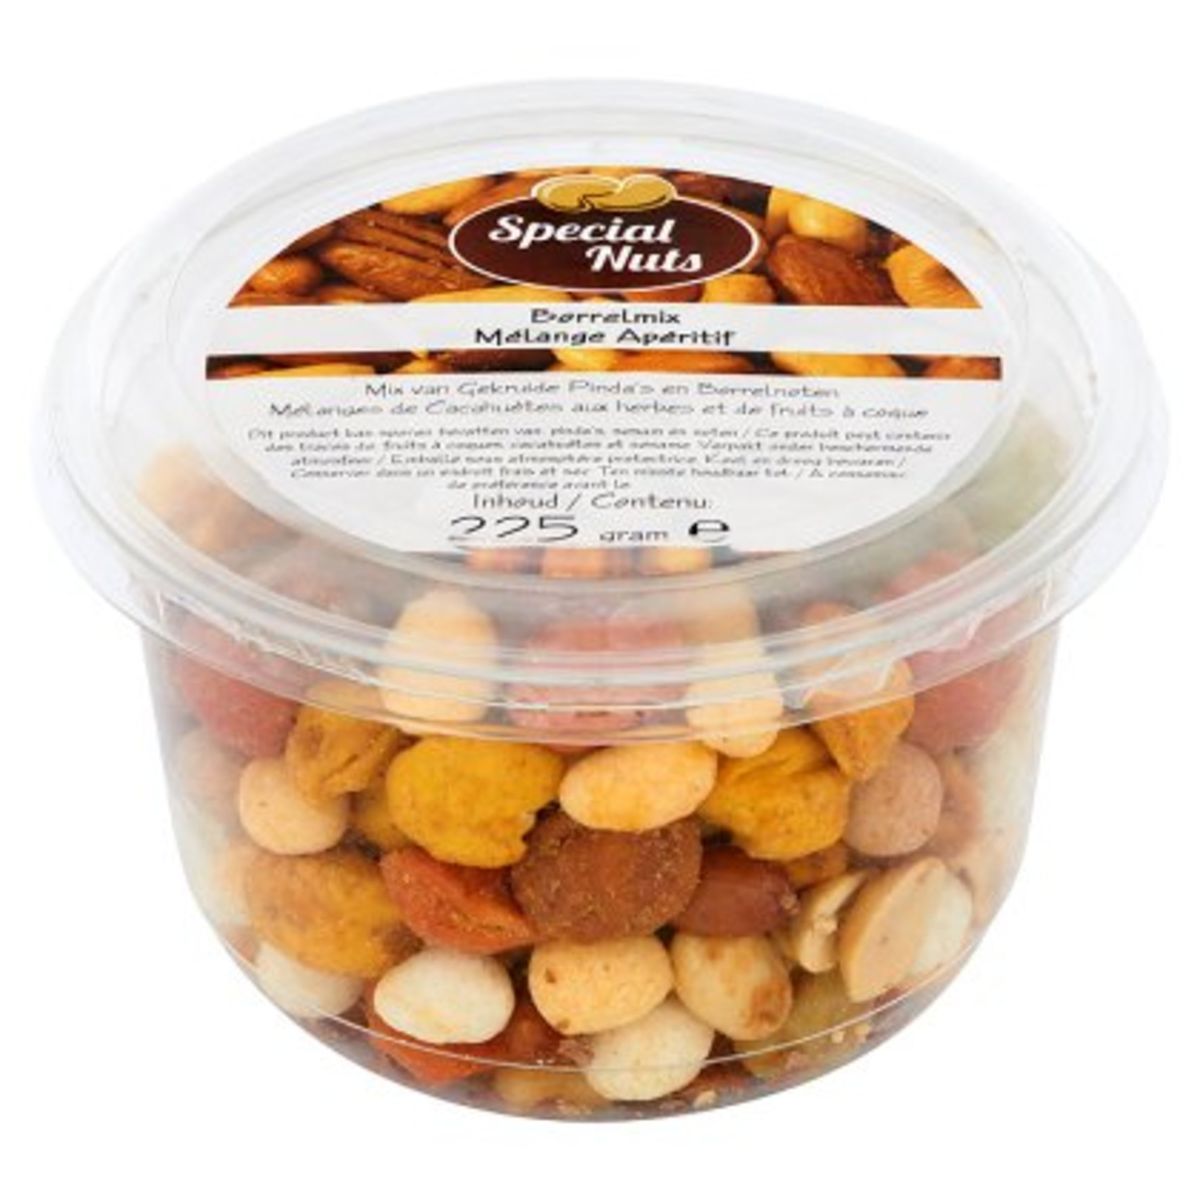 Special Nuts Borrelmix Mix van Gekruide Pinda's en Borrelnoten 225 g